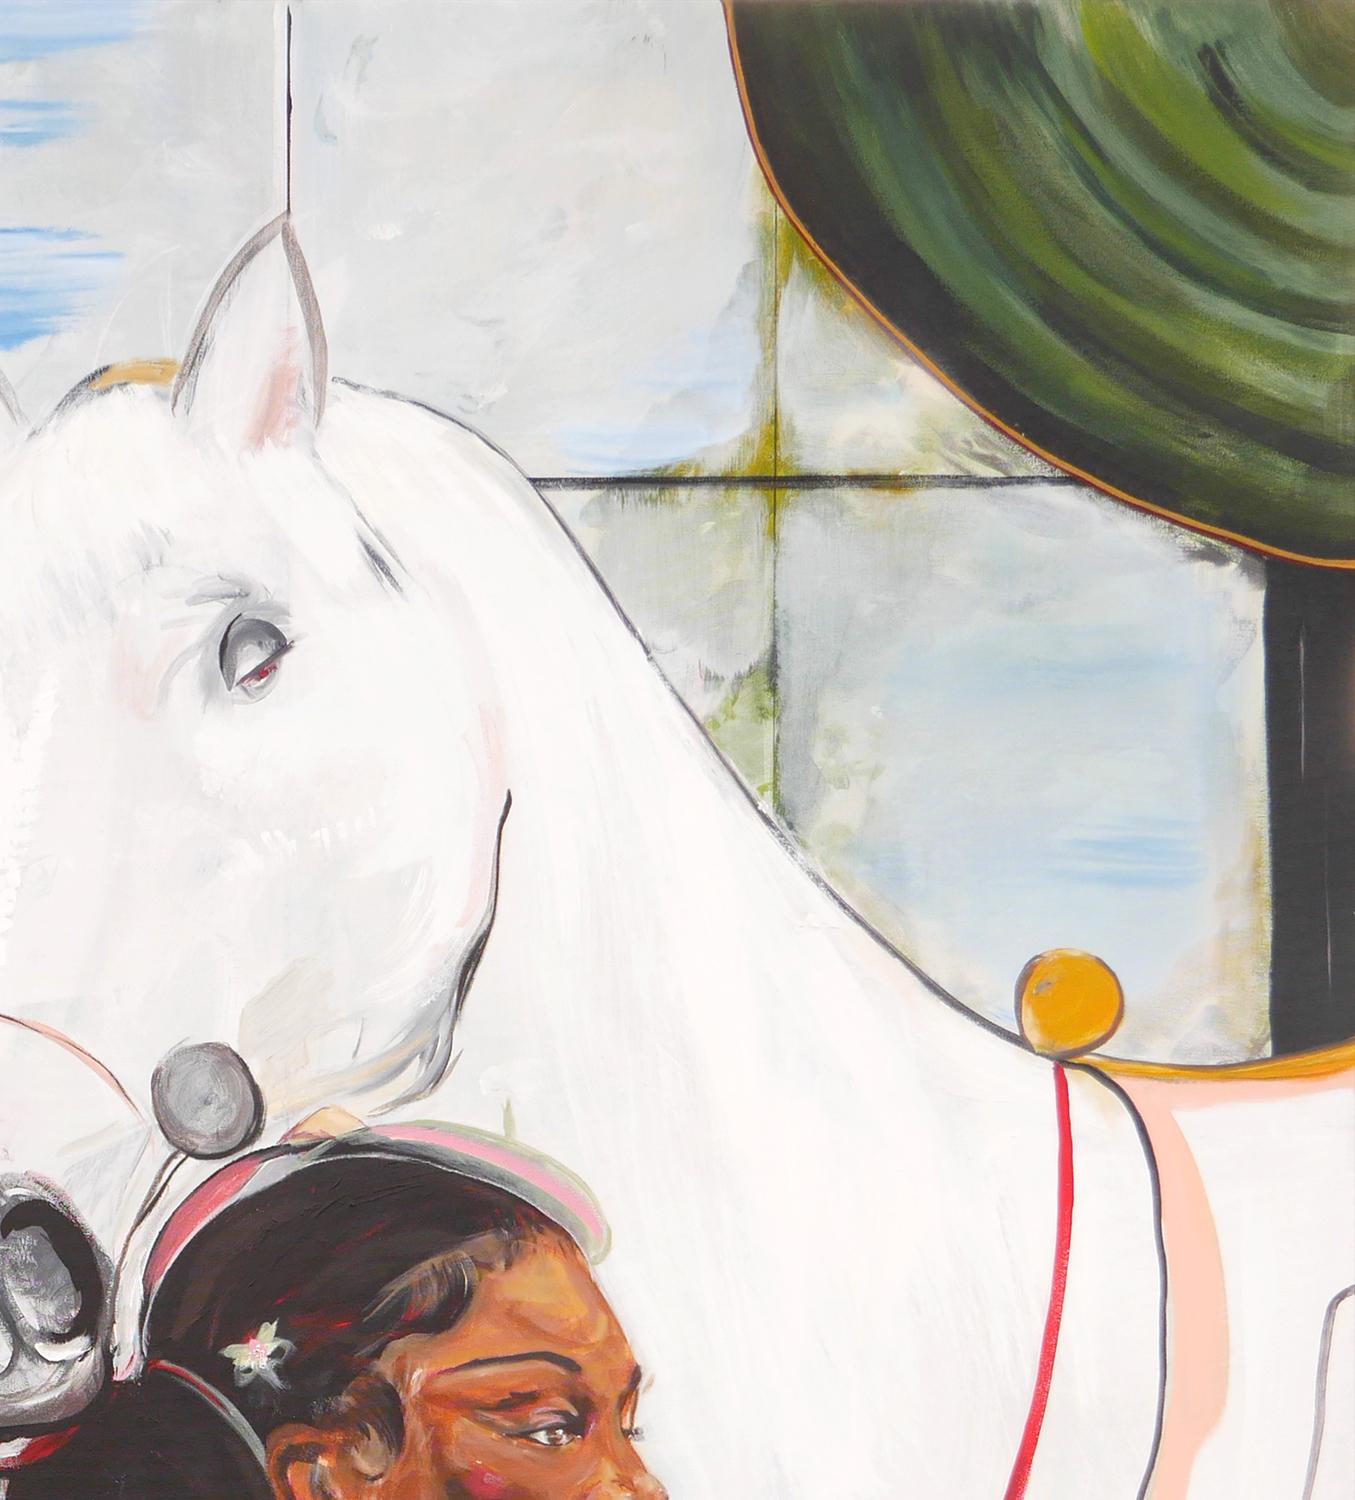 Pastellfarbene abstrakte zeitgenössische figurative Malerei des Künstlers Moisés Villafuerte aus Houston, TX. Das Gemälde zeigt eine Braut vor einem raumhohen Fenster. Die Braut ist mit einer Helferin zu sehen, die ihr die Haare macht, einem Hund